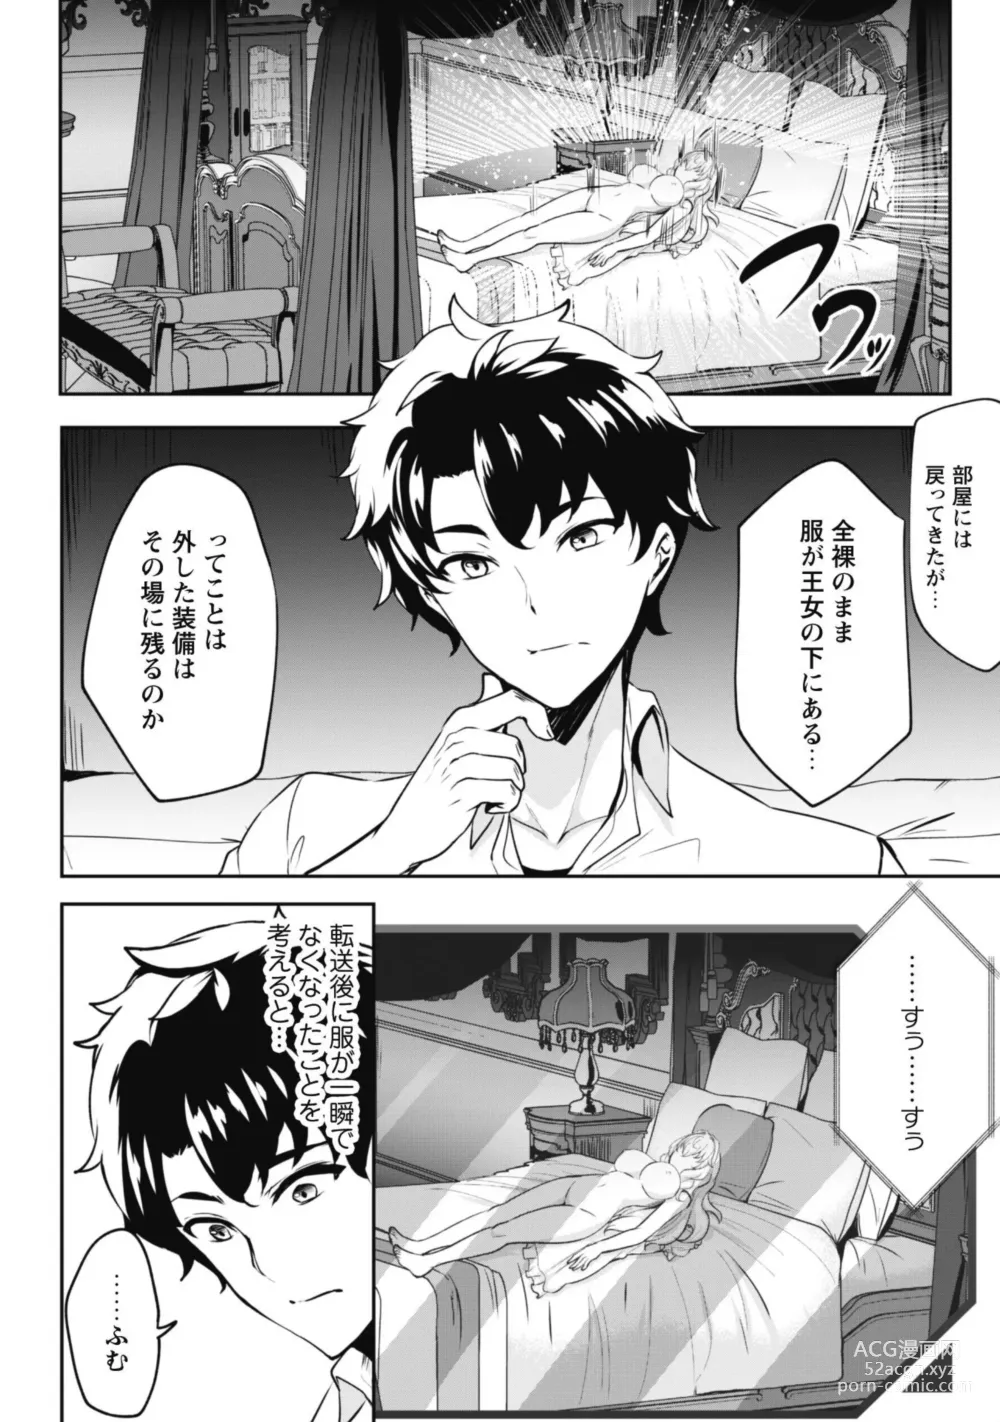 Page 48 of manga Hangyaku no Yūsha 〜 Sukiru o Tsukatte Haraguro ōjo no Kokoro to Karada o Shōaku seyo 〜 1-2